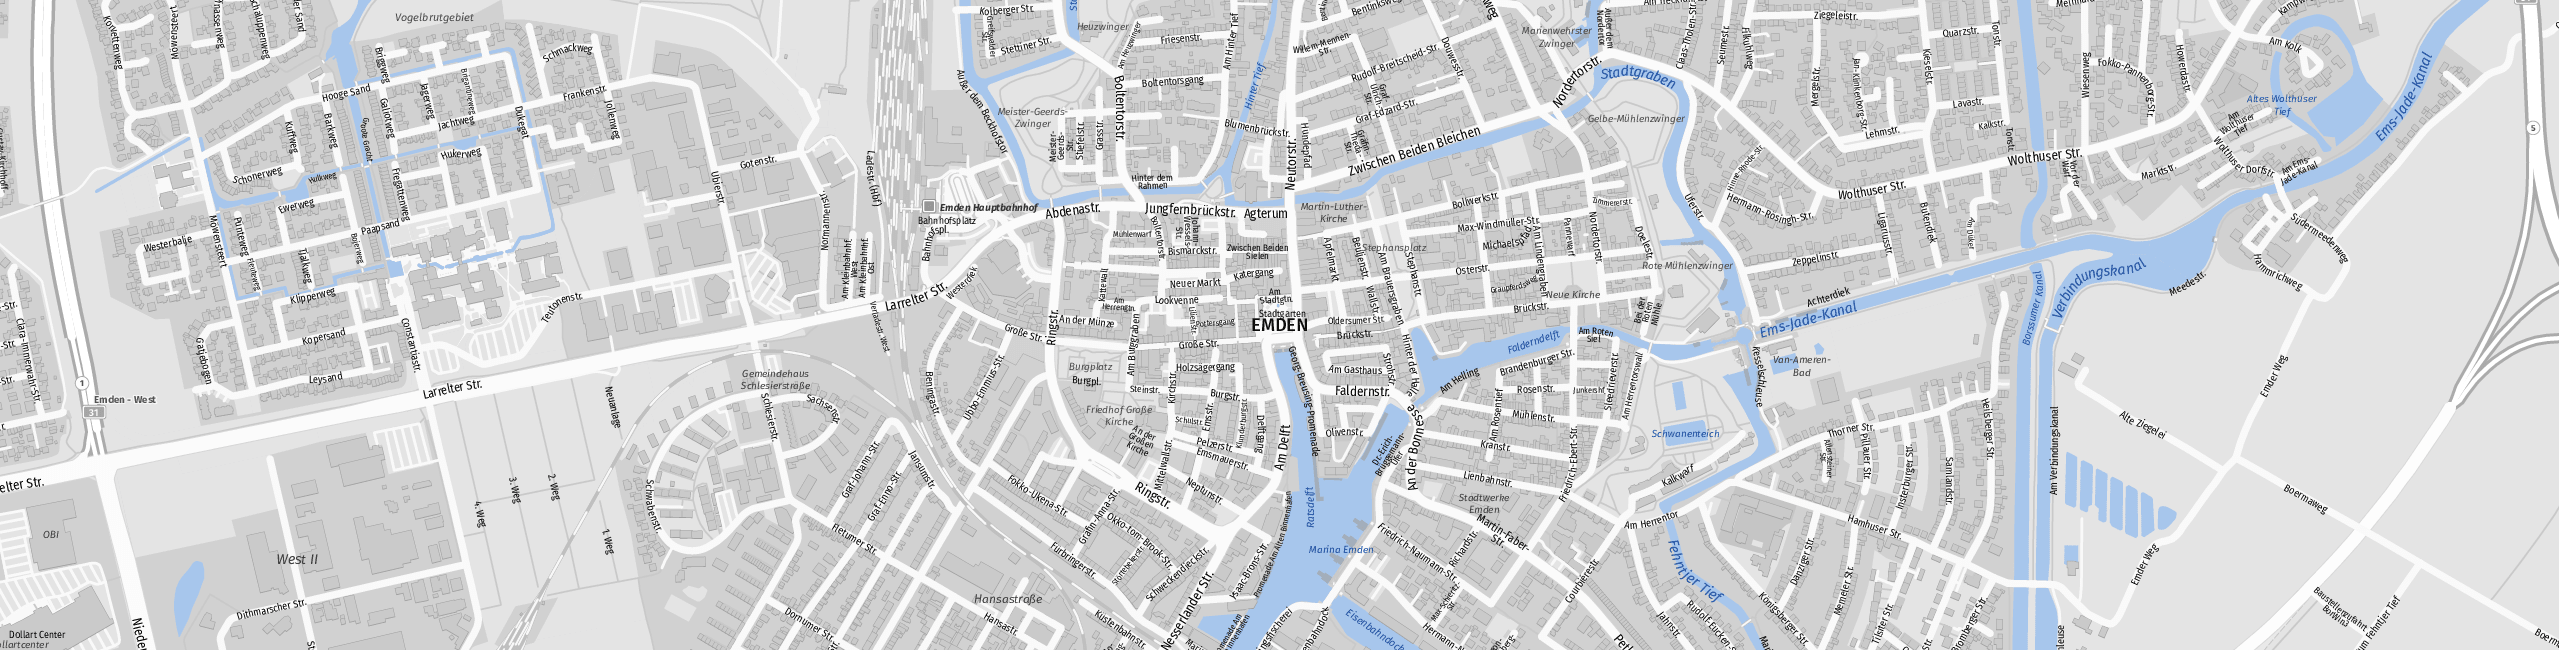 Stadtplan Emden zum Downloaden.